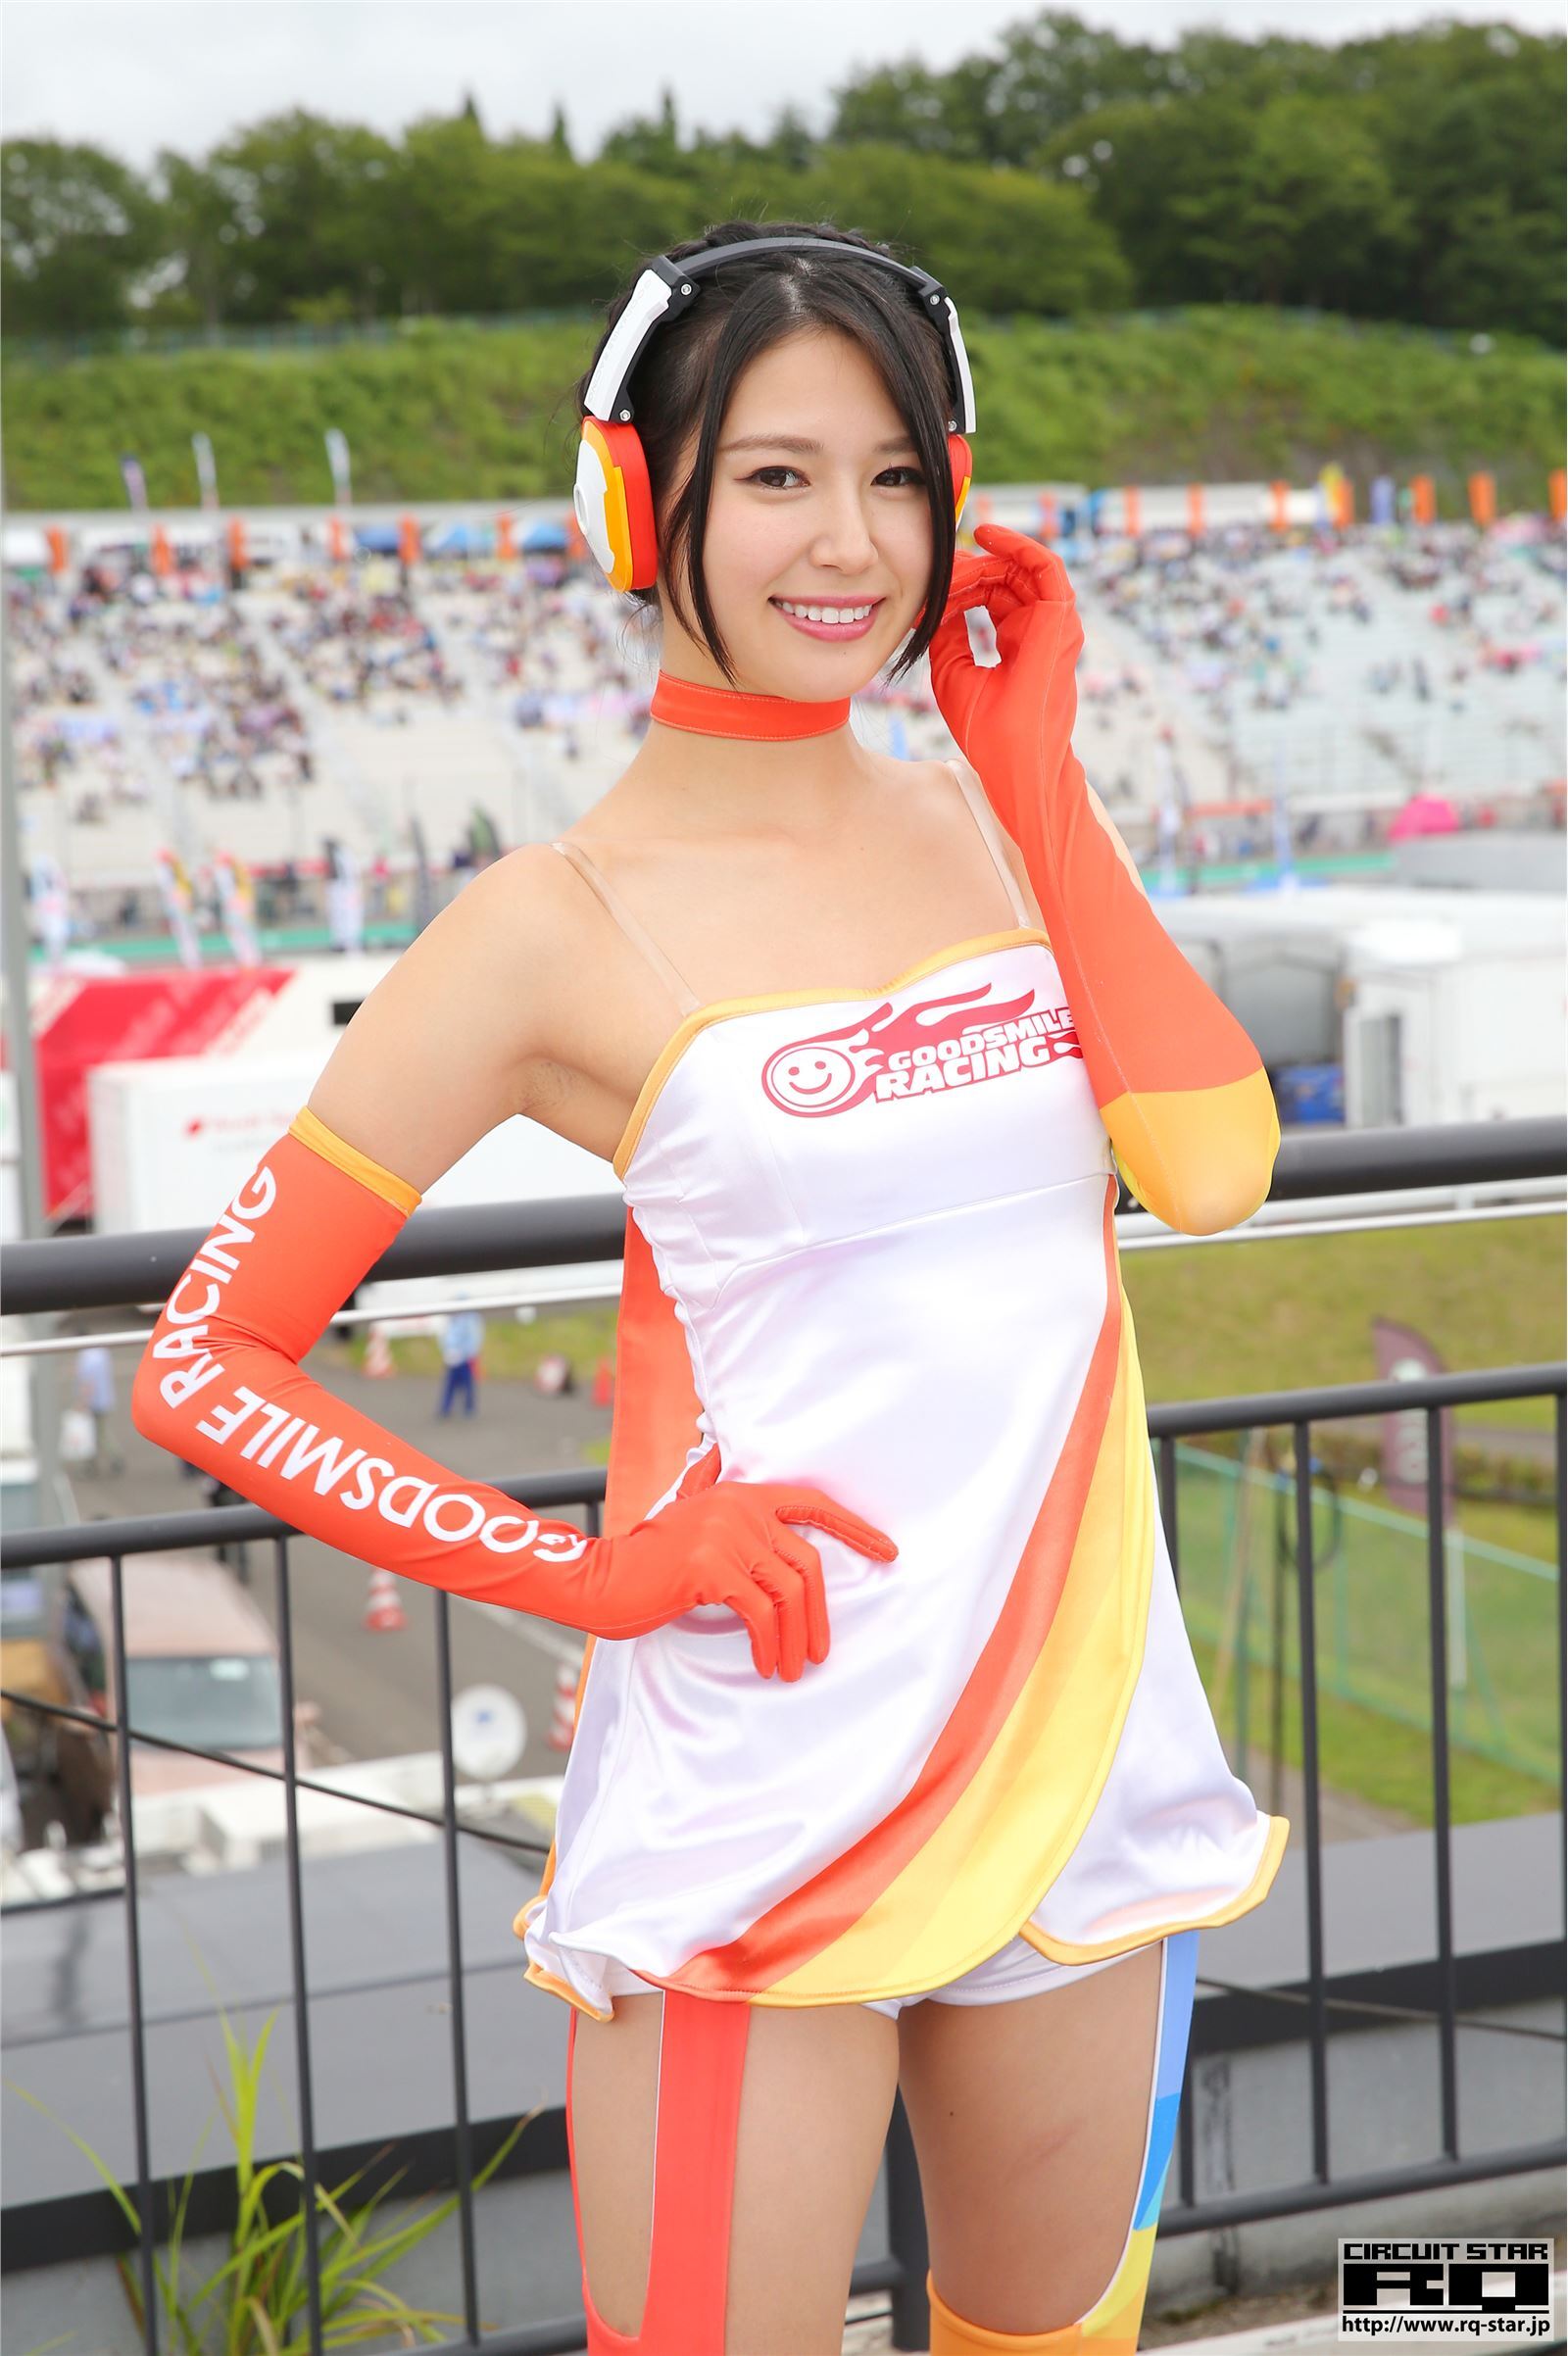 [RQ-STAR]2018.04.27 Tsukasa Arai 荒井つかさ Race Queen